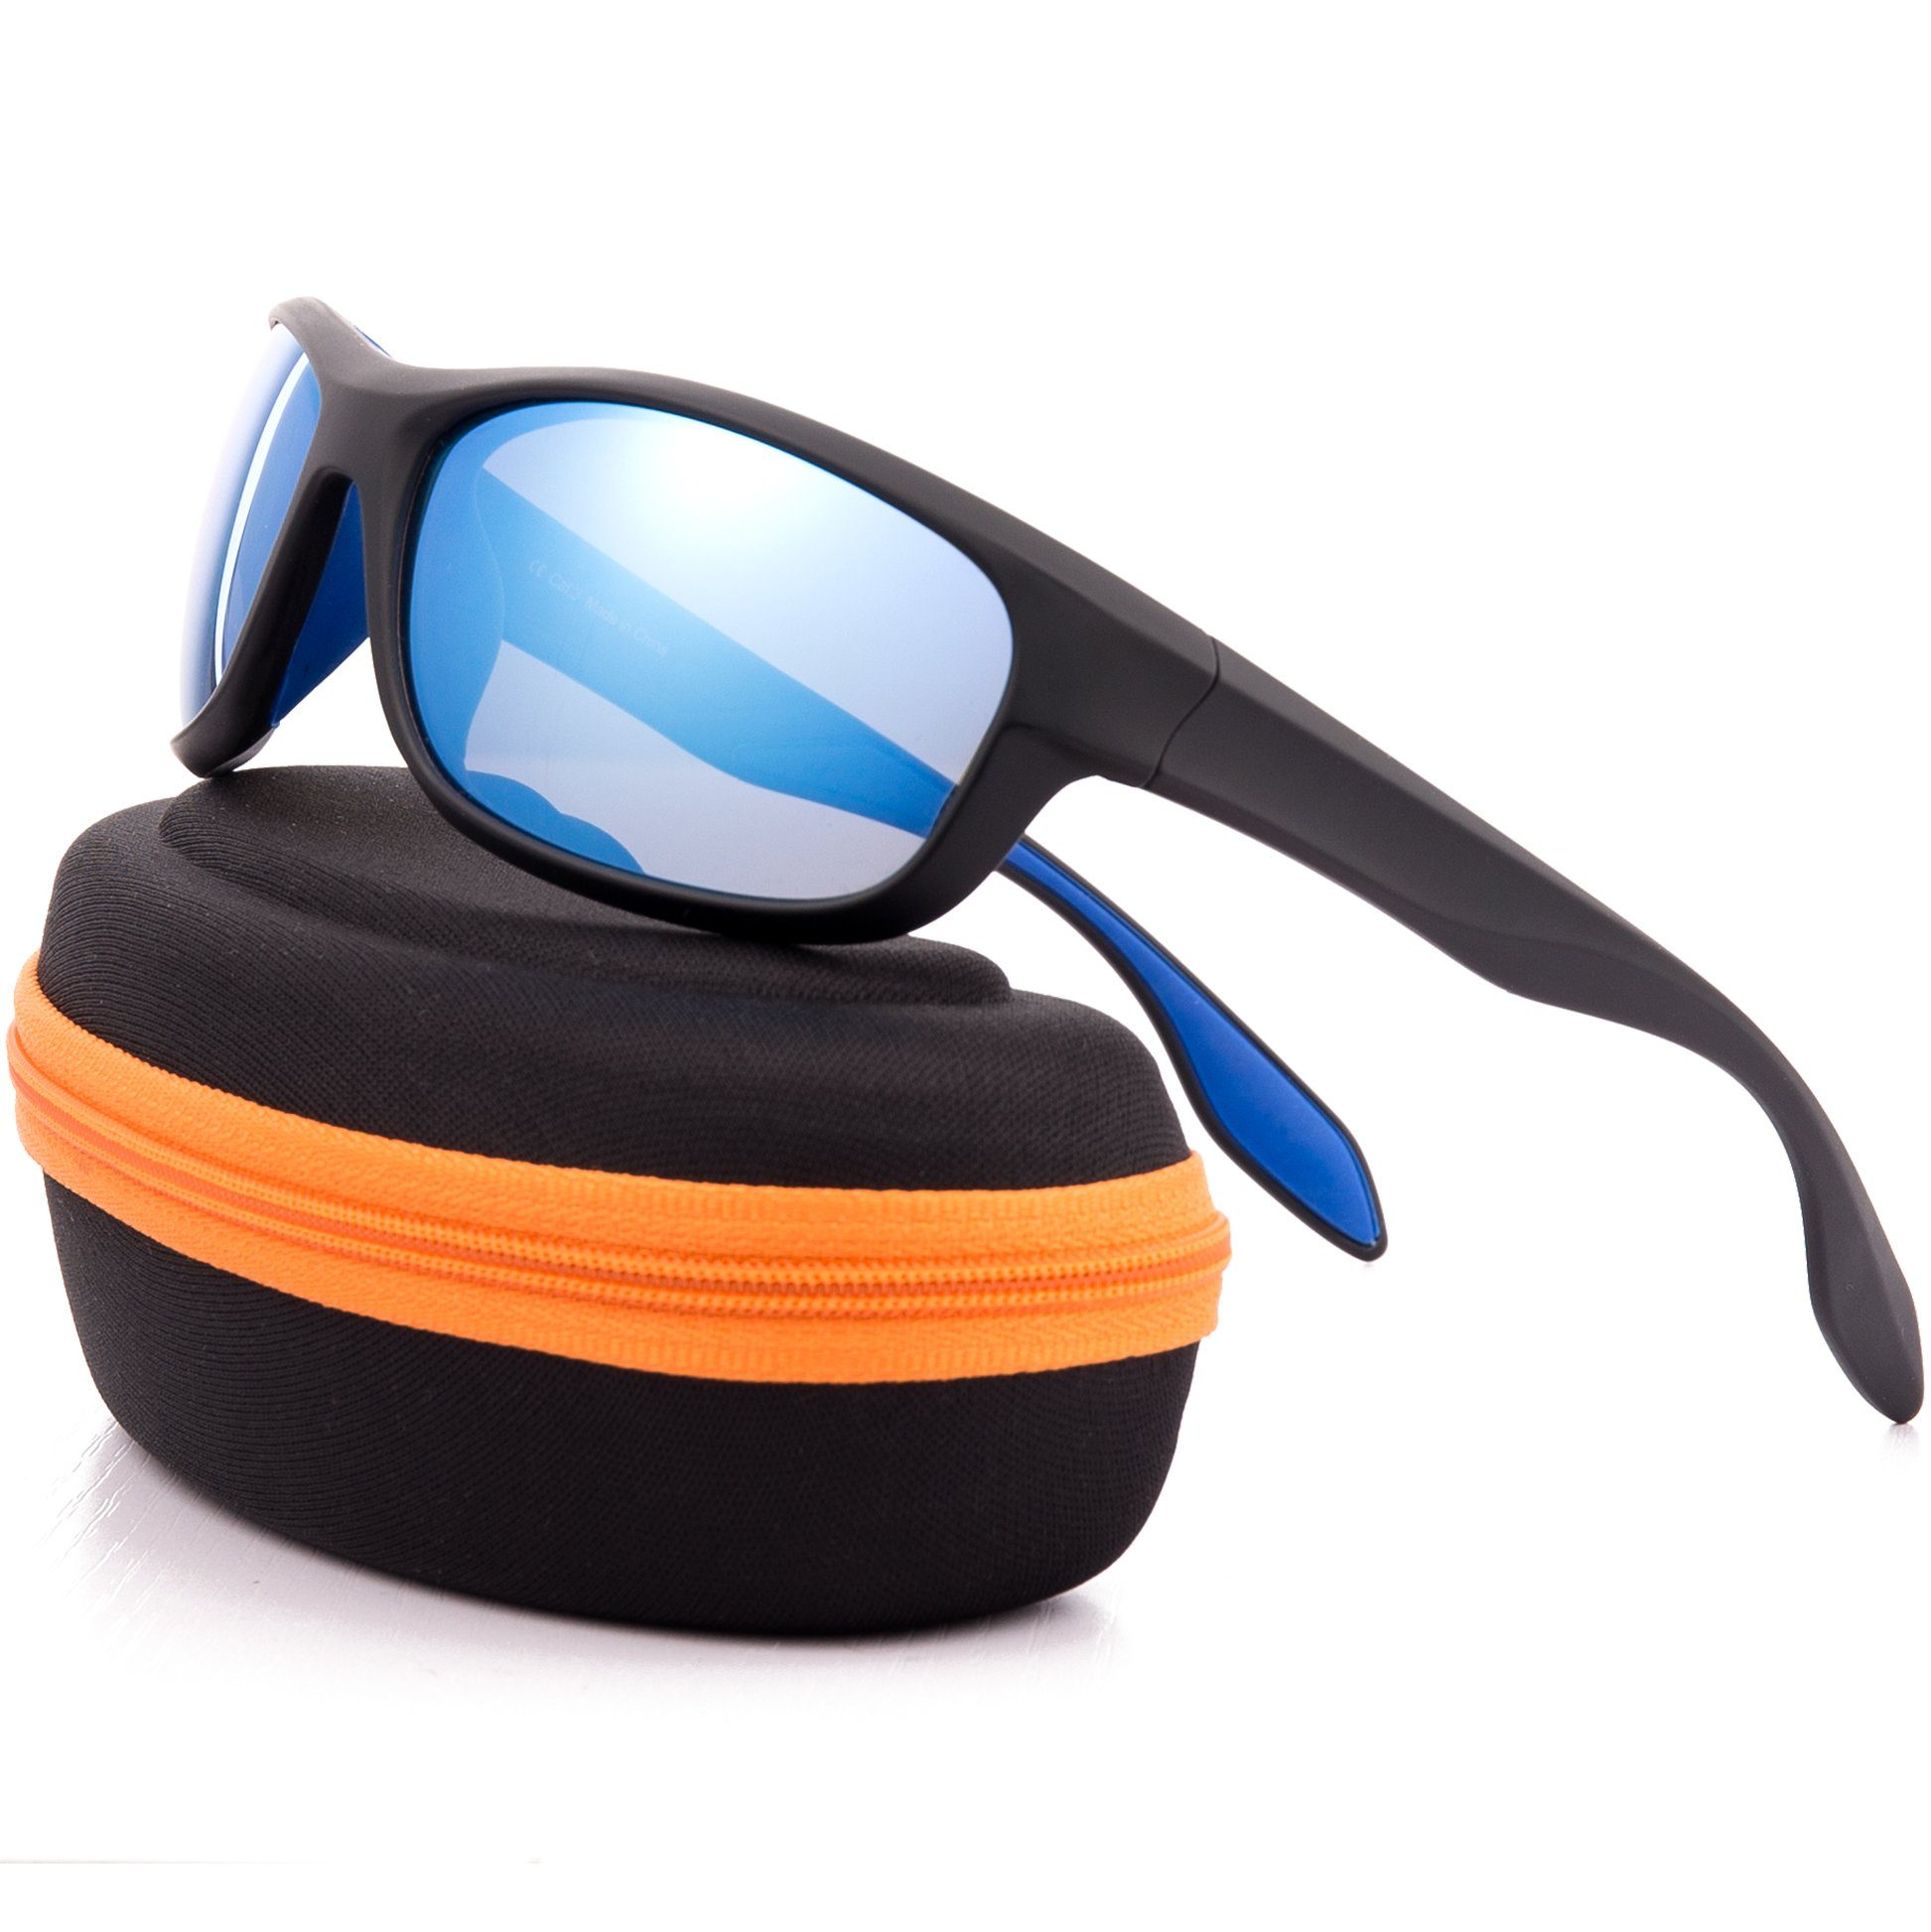 Fahrradbrille für Männer Frauen mit 3 Wechselobjektiven OULIQI Fahrradbrille Anti-UV400 zum Fahren Angeln Glof Baseball Laufen Wandern Polarisierte Sportsonnenbrille 